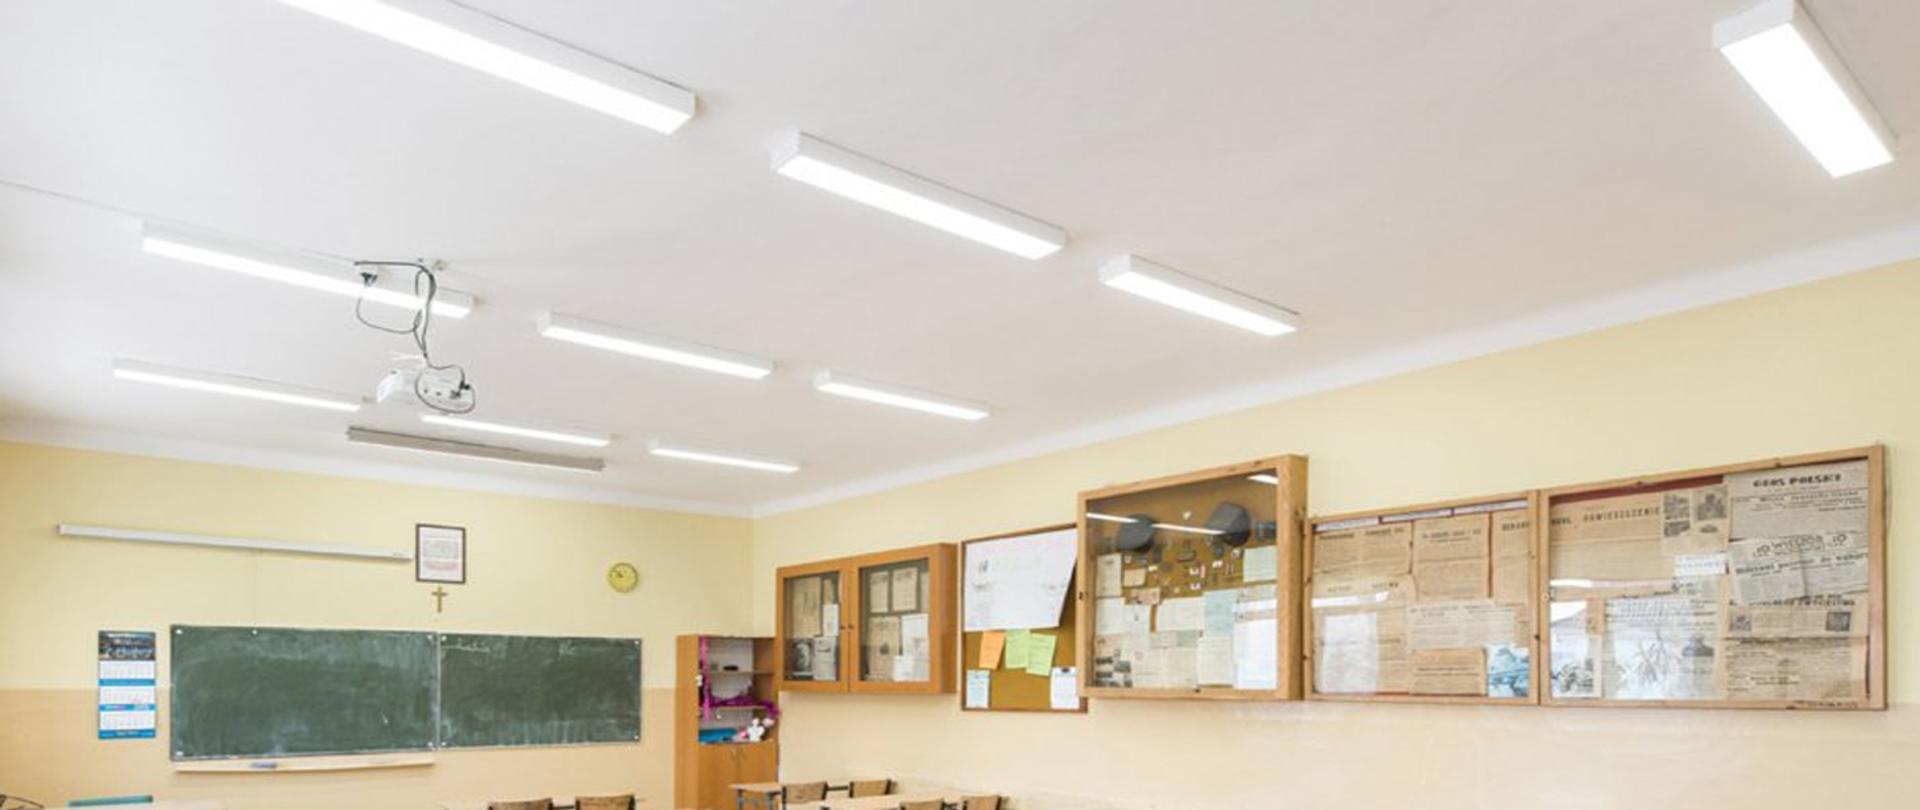 Lampy ledowe w sali lekcyjnej na białym suficie. Poniżej tablica gabloty i ławki oraz krzesła.